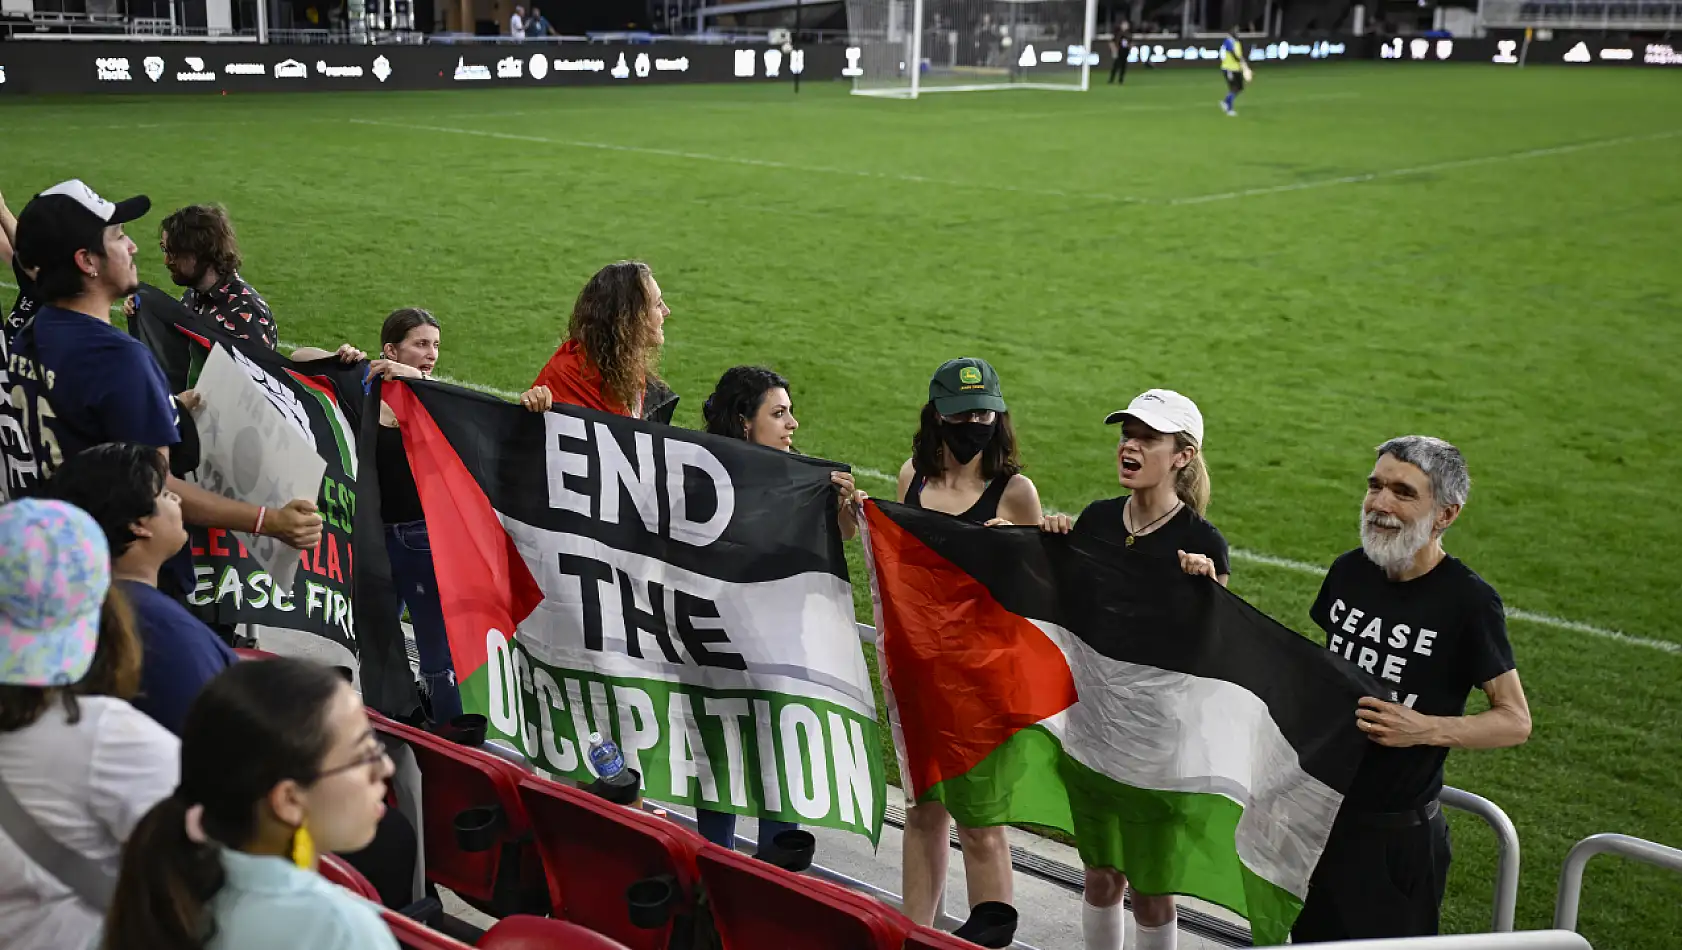 Filistin lehine slogan attıkları için kongre futbol maçından atıldılar